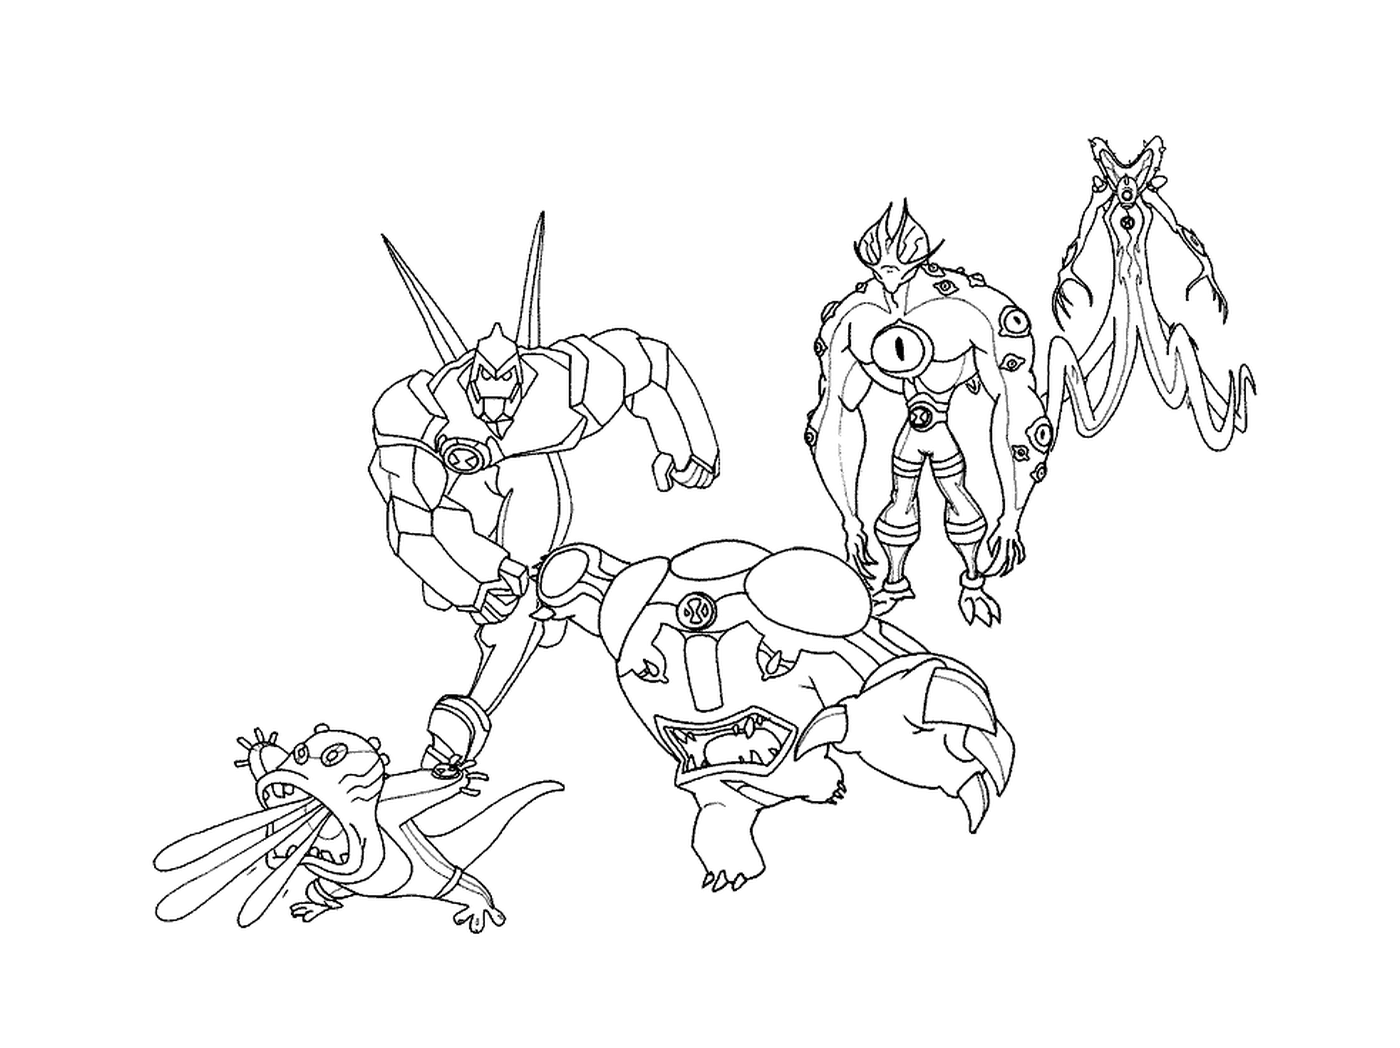   Plusieurs personnages de dessin animé dessinés 